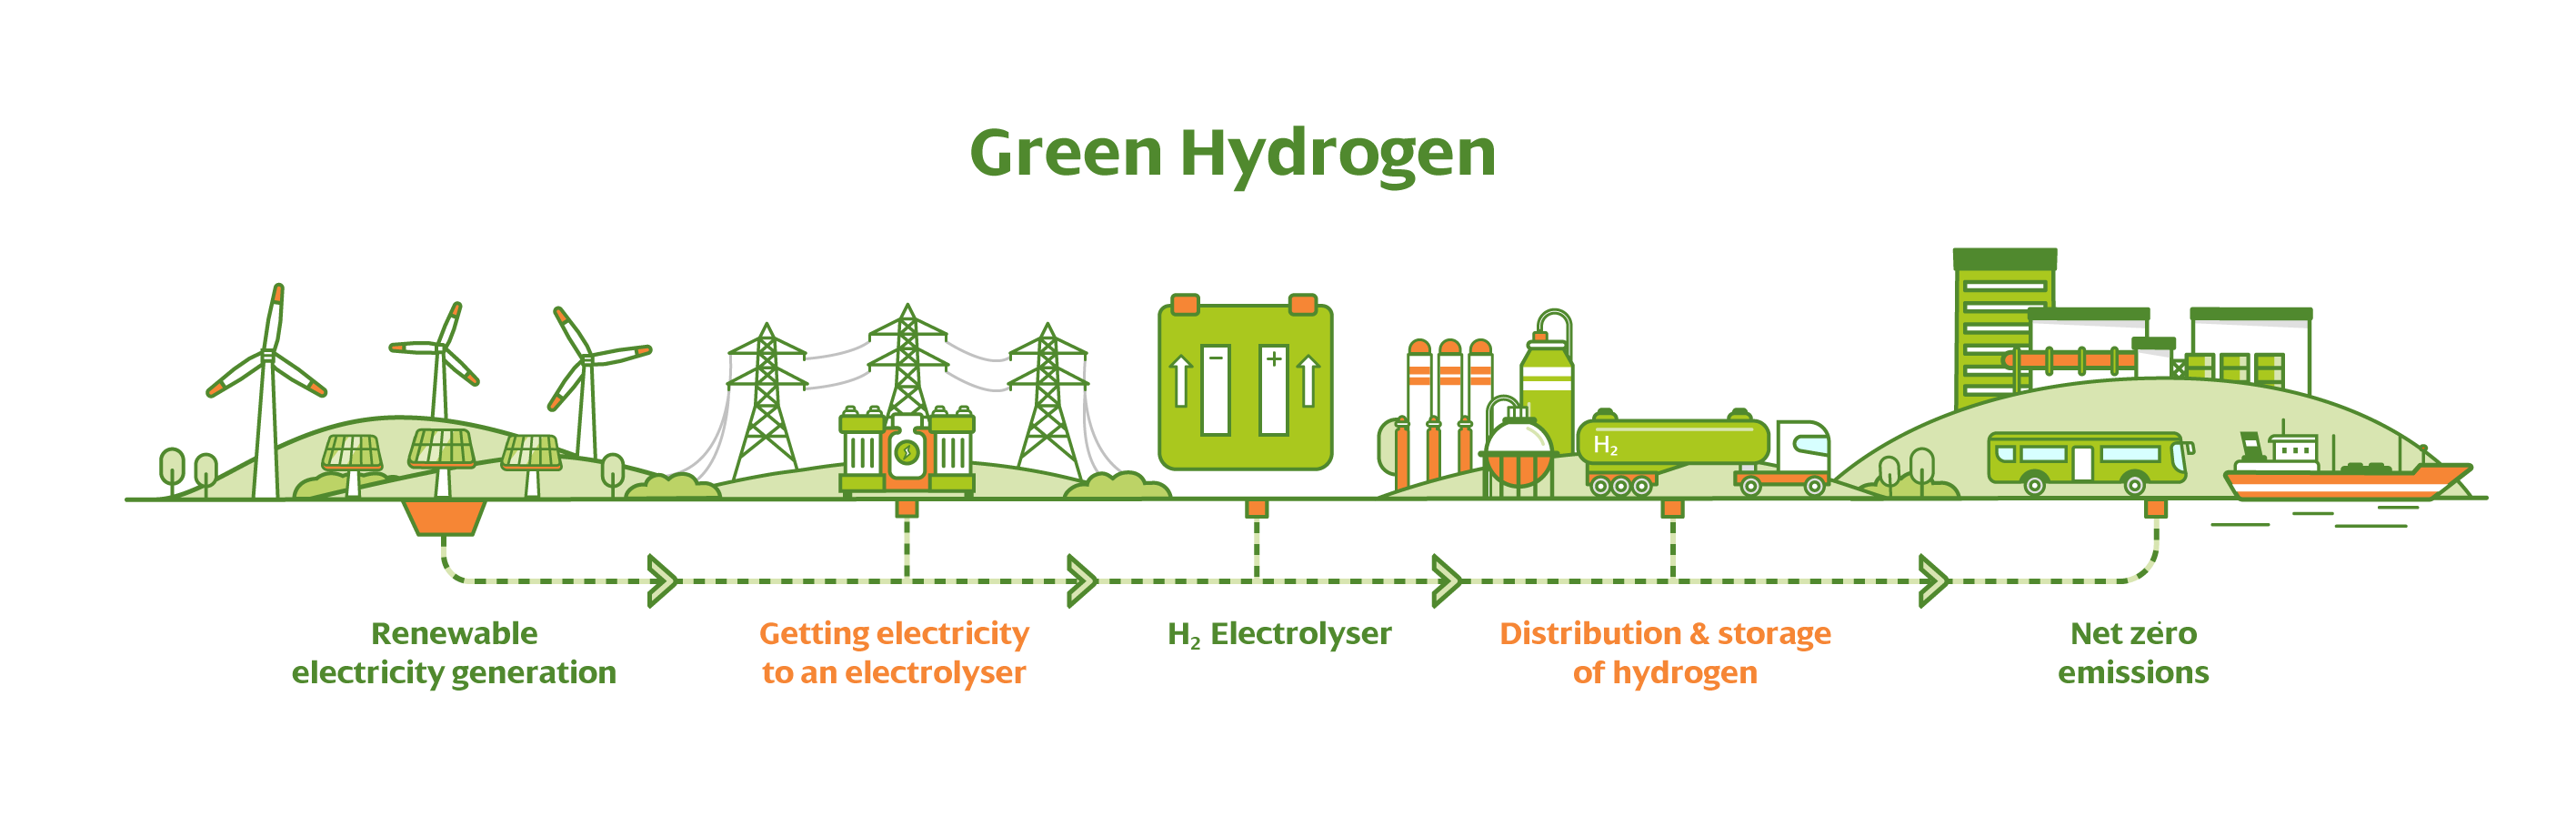 Green hydrogen project planned near Glasgow